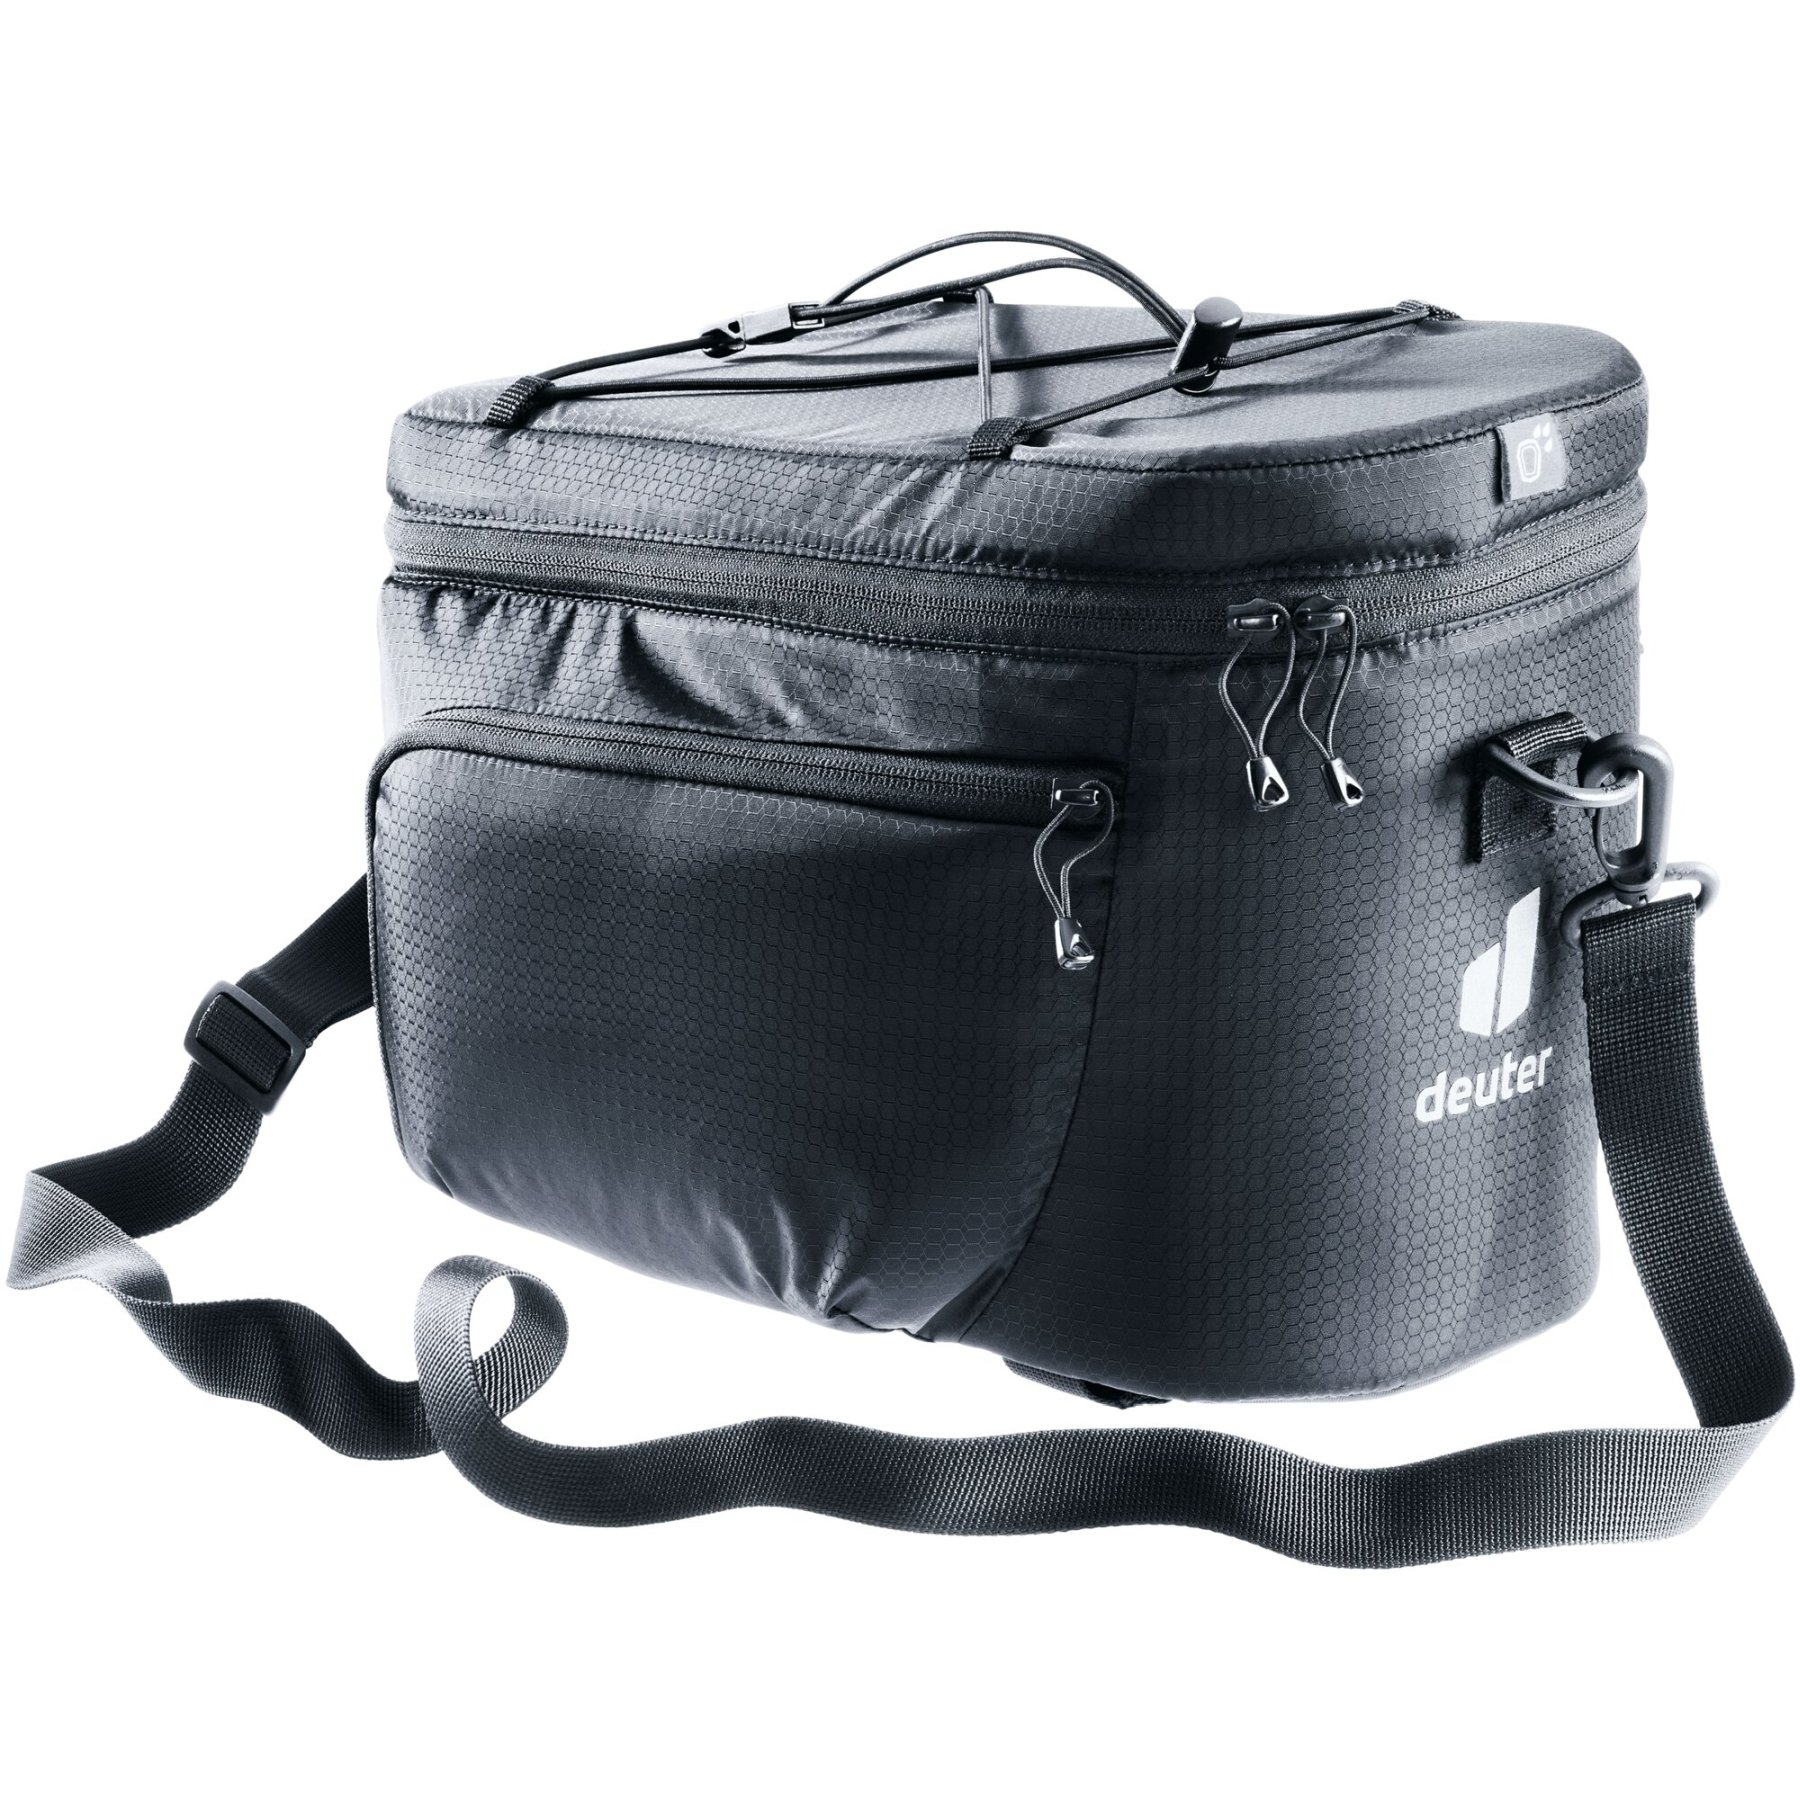 Produktbild von Deuter Rack Bag 10 Gepäckträgertasche - schwarz